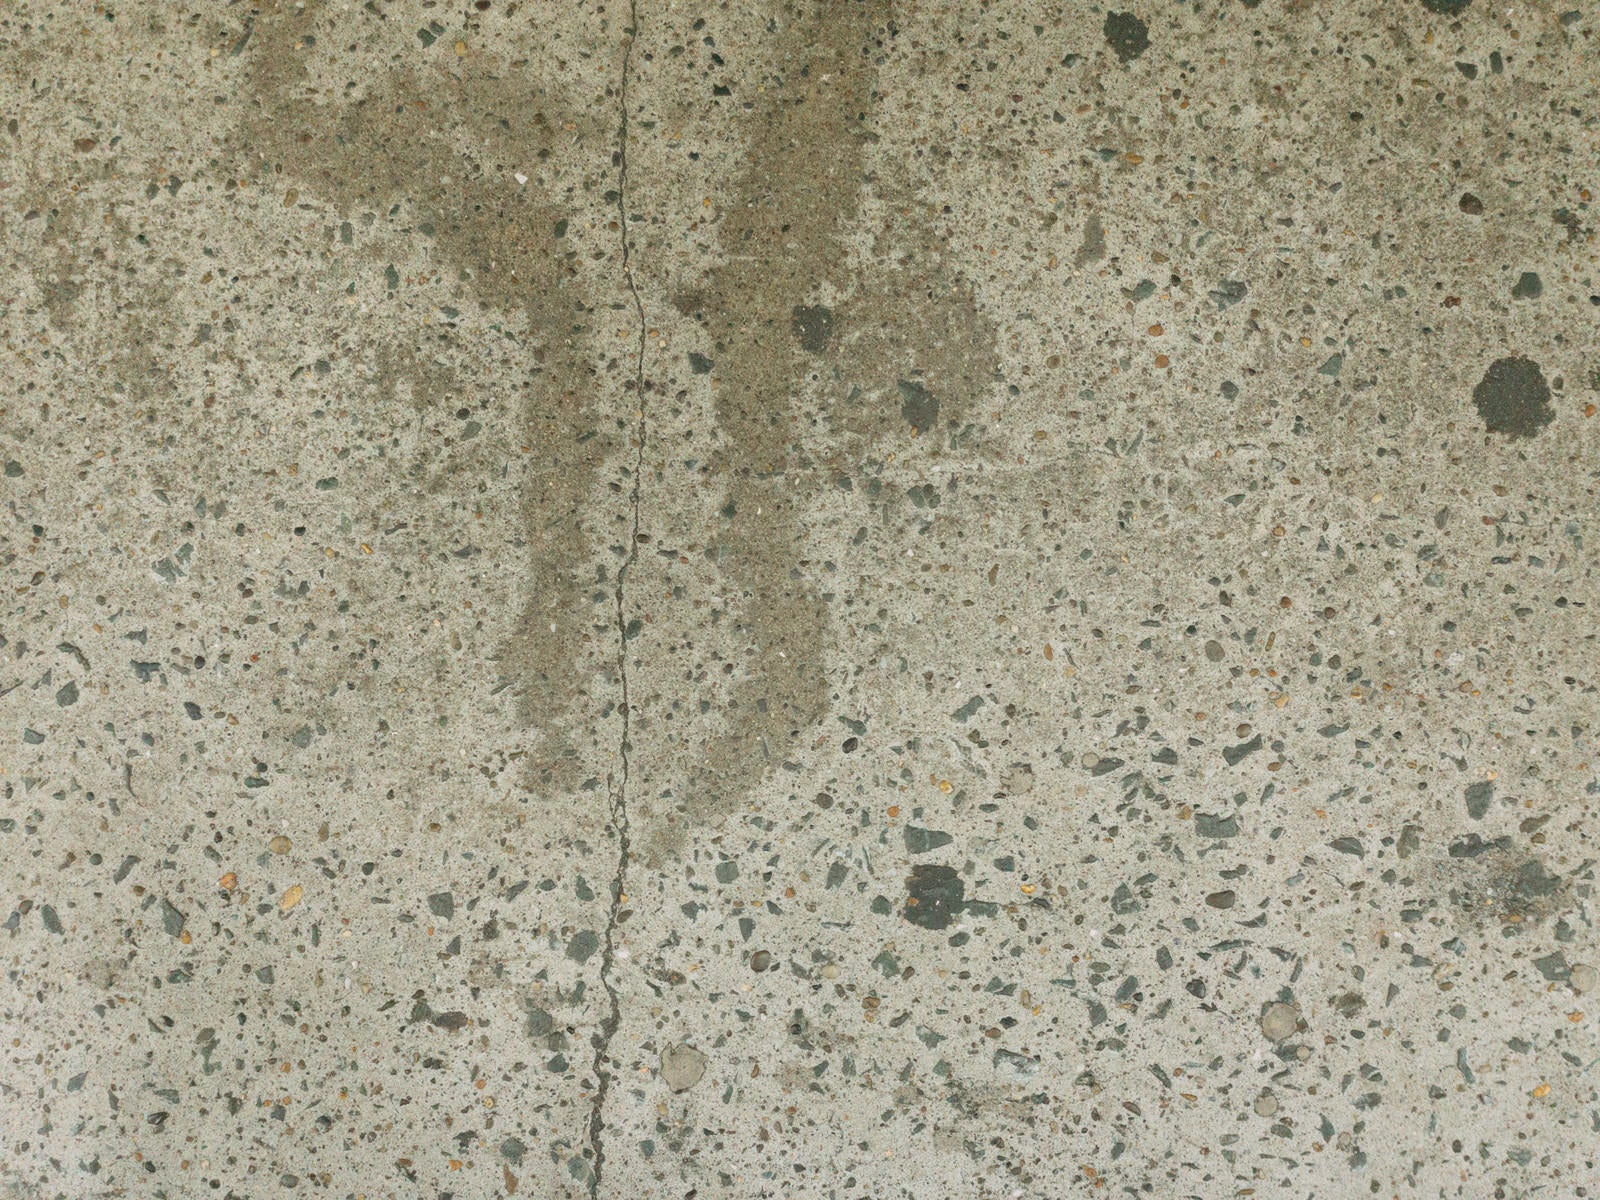 「コンクリートに残るヒビとシミのテクスチャ」の写真